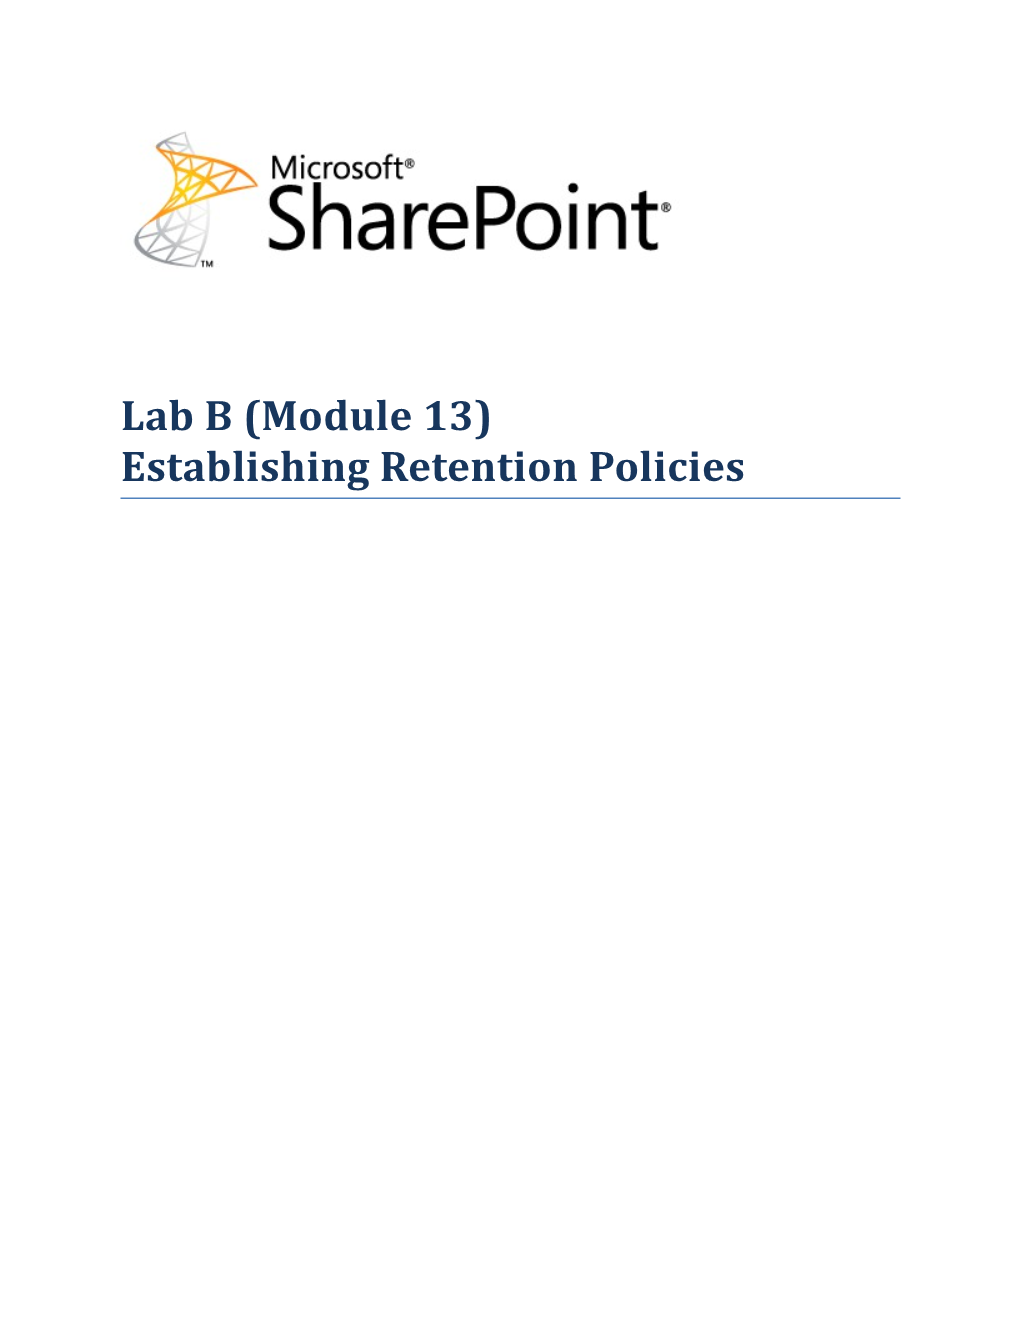 Lab B (Module 13) Establishing Retention Policies